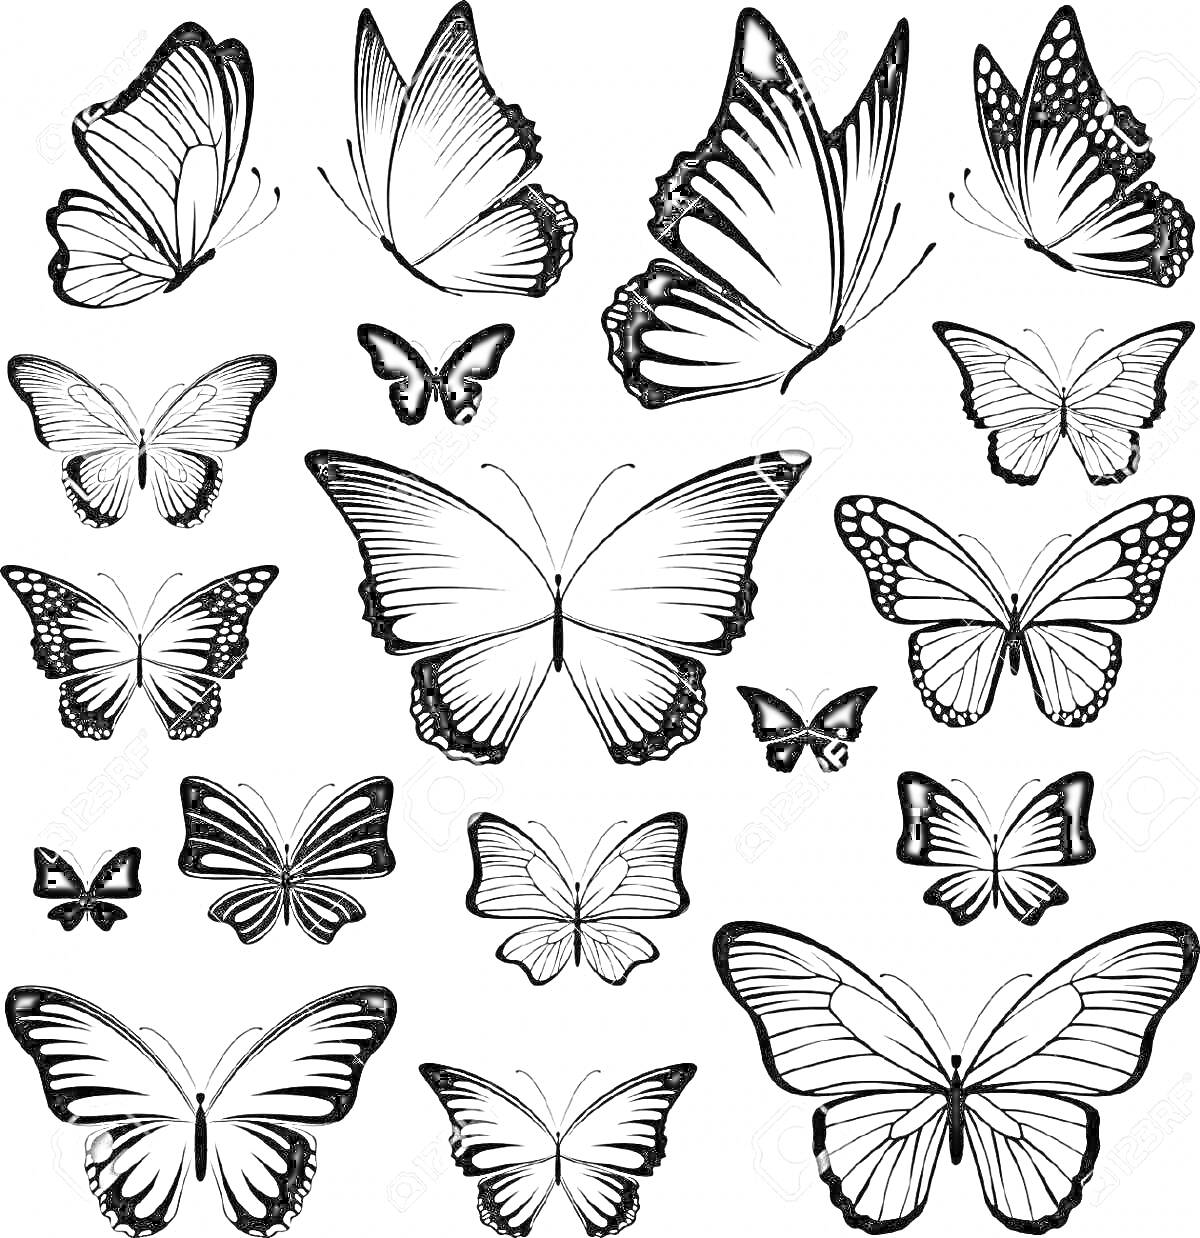 Раскраска Разнообразие черно-белых бабочек с различными узорами на крыльях